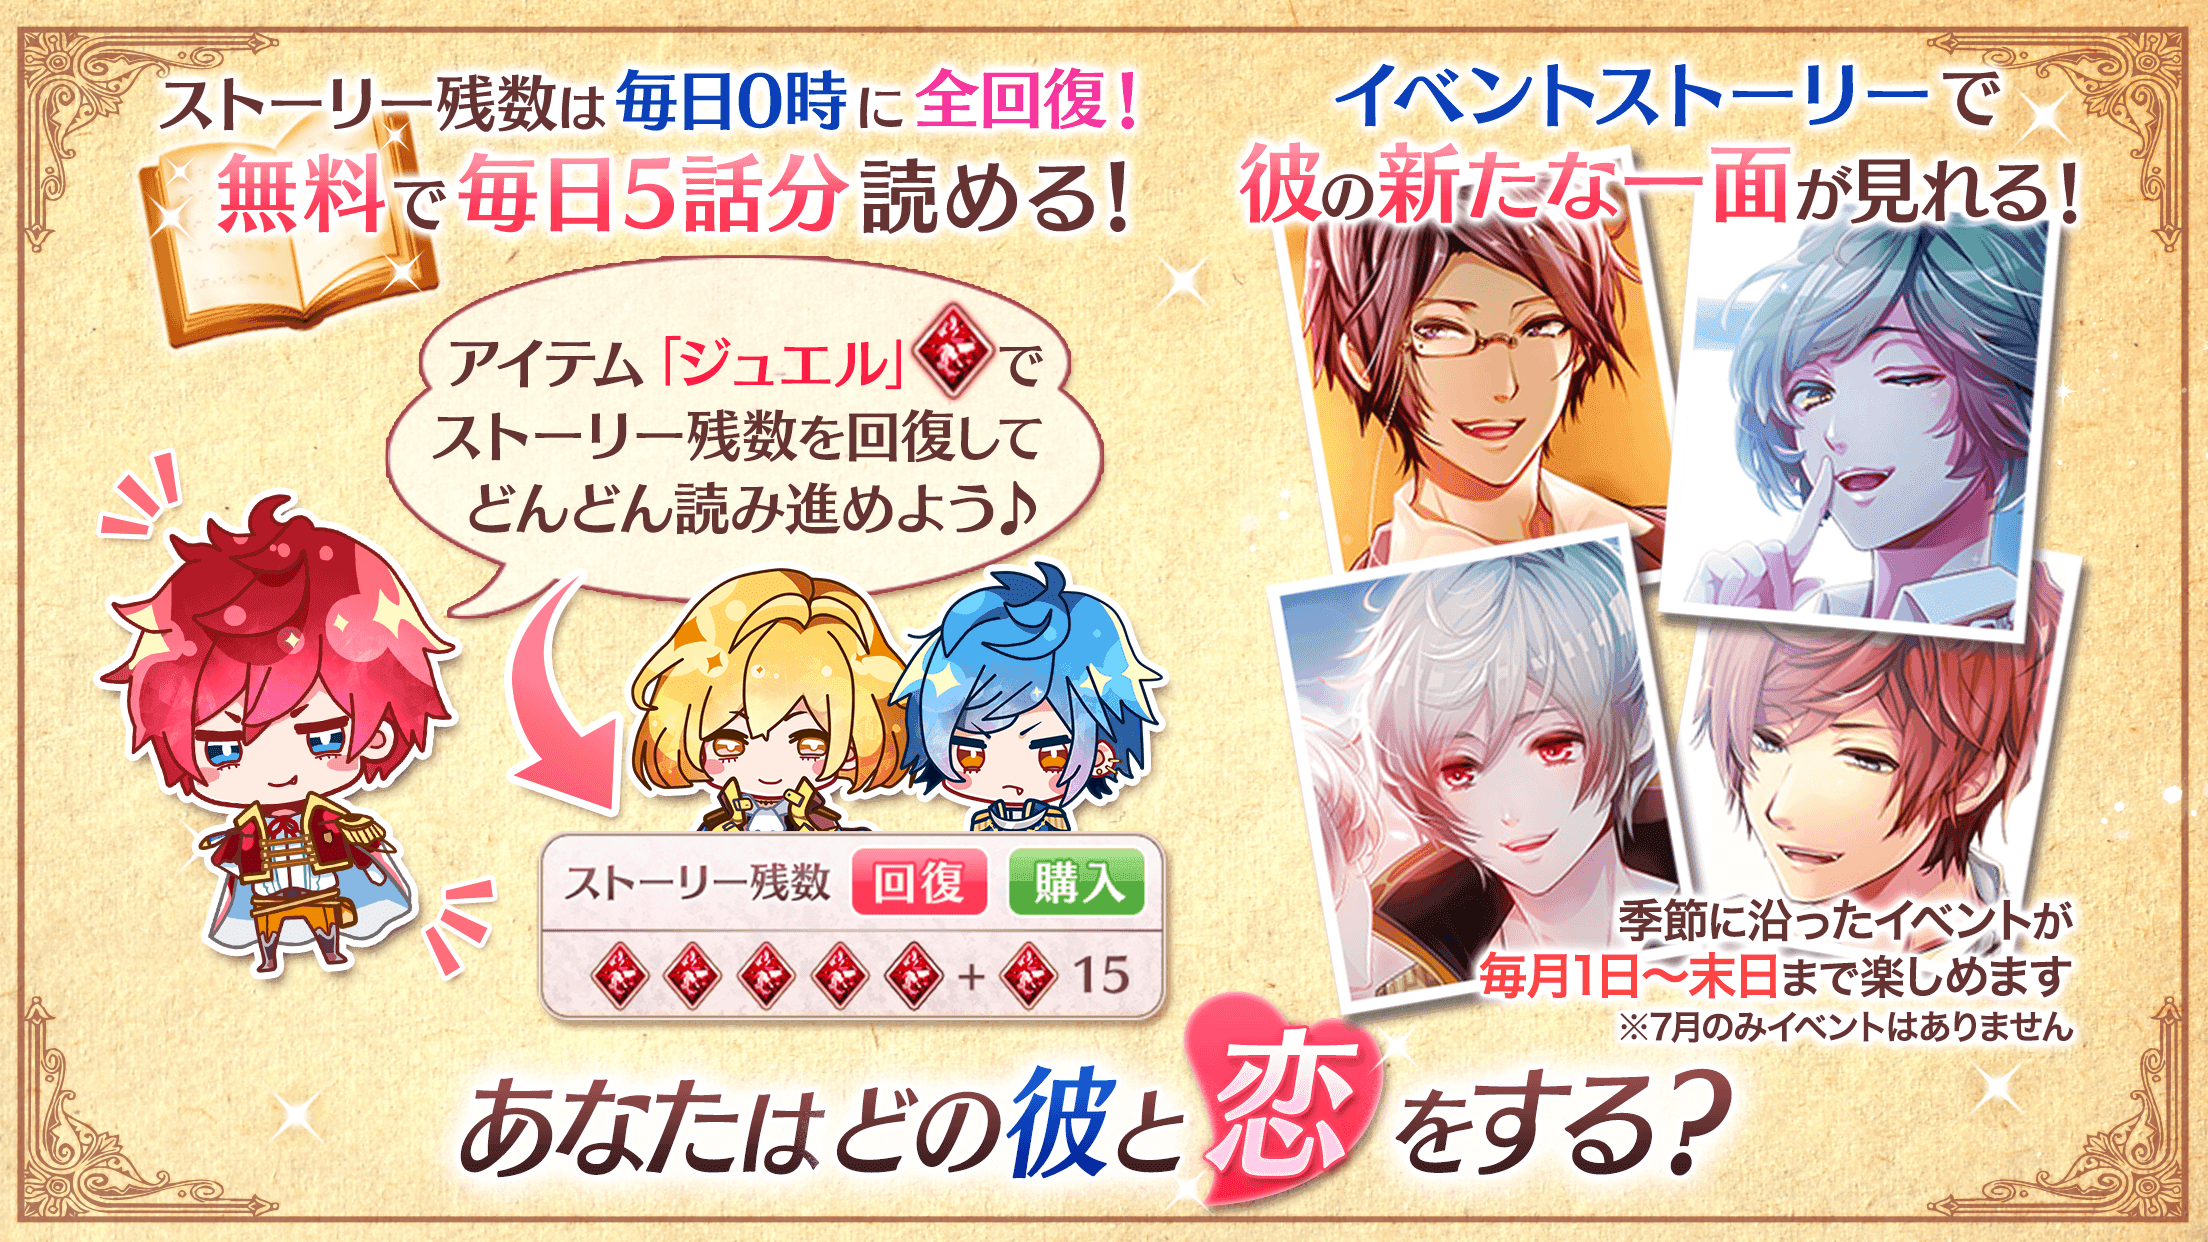 ナイトメアハーレム 恋愛ゲーム無料女性向け人気 ファンタジー乙女ゲーム Download Game Taptap